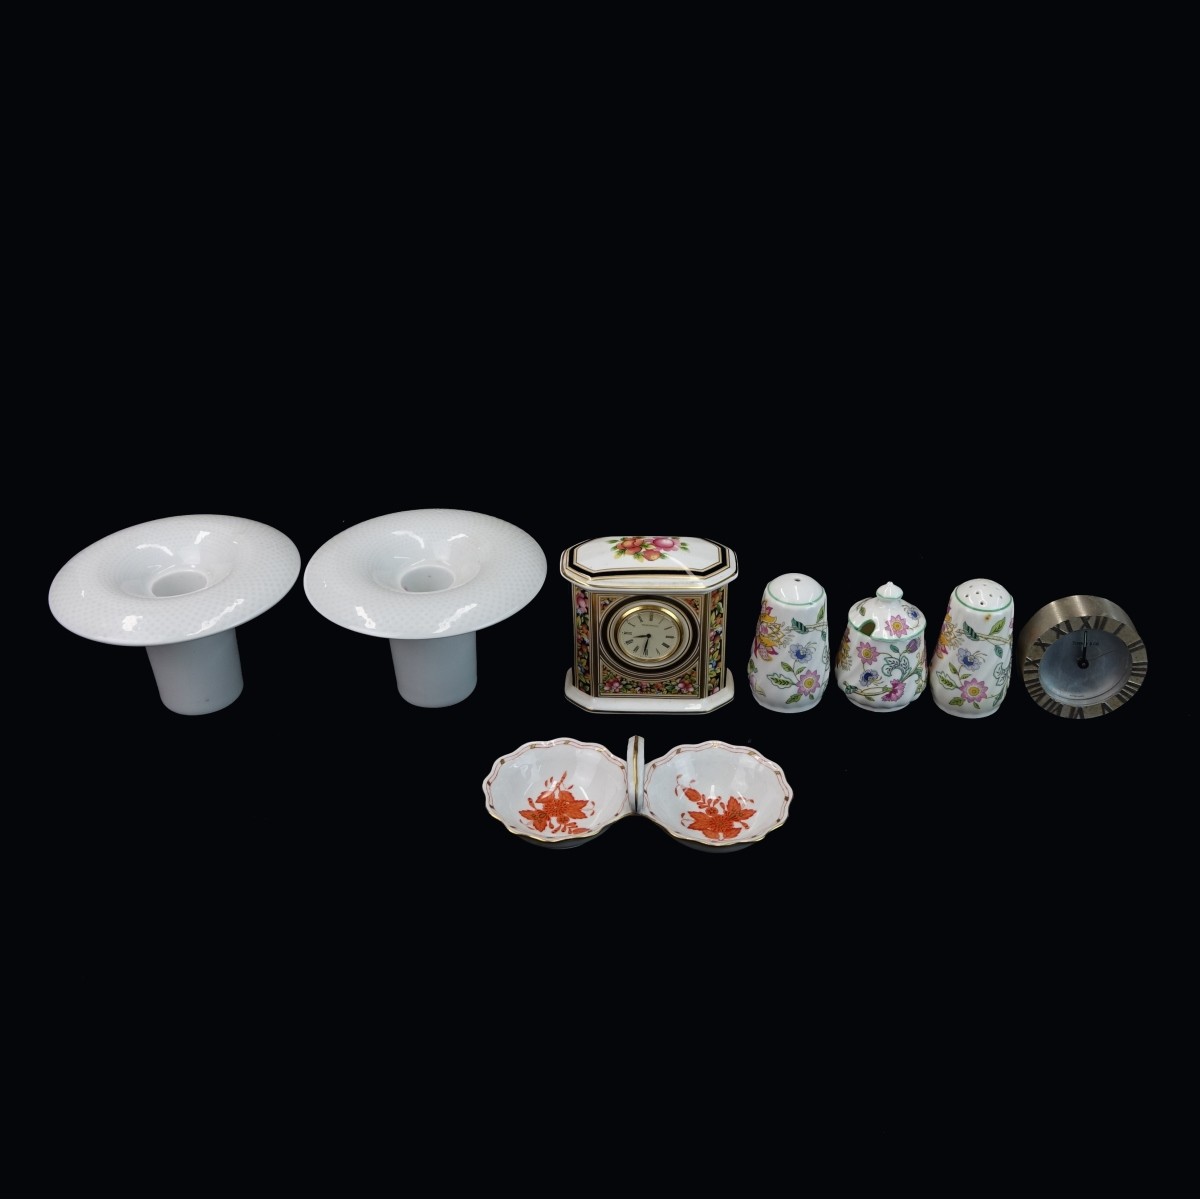 8 pcs Vintage Porcelain Table Top Items